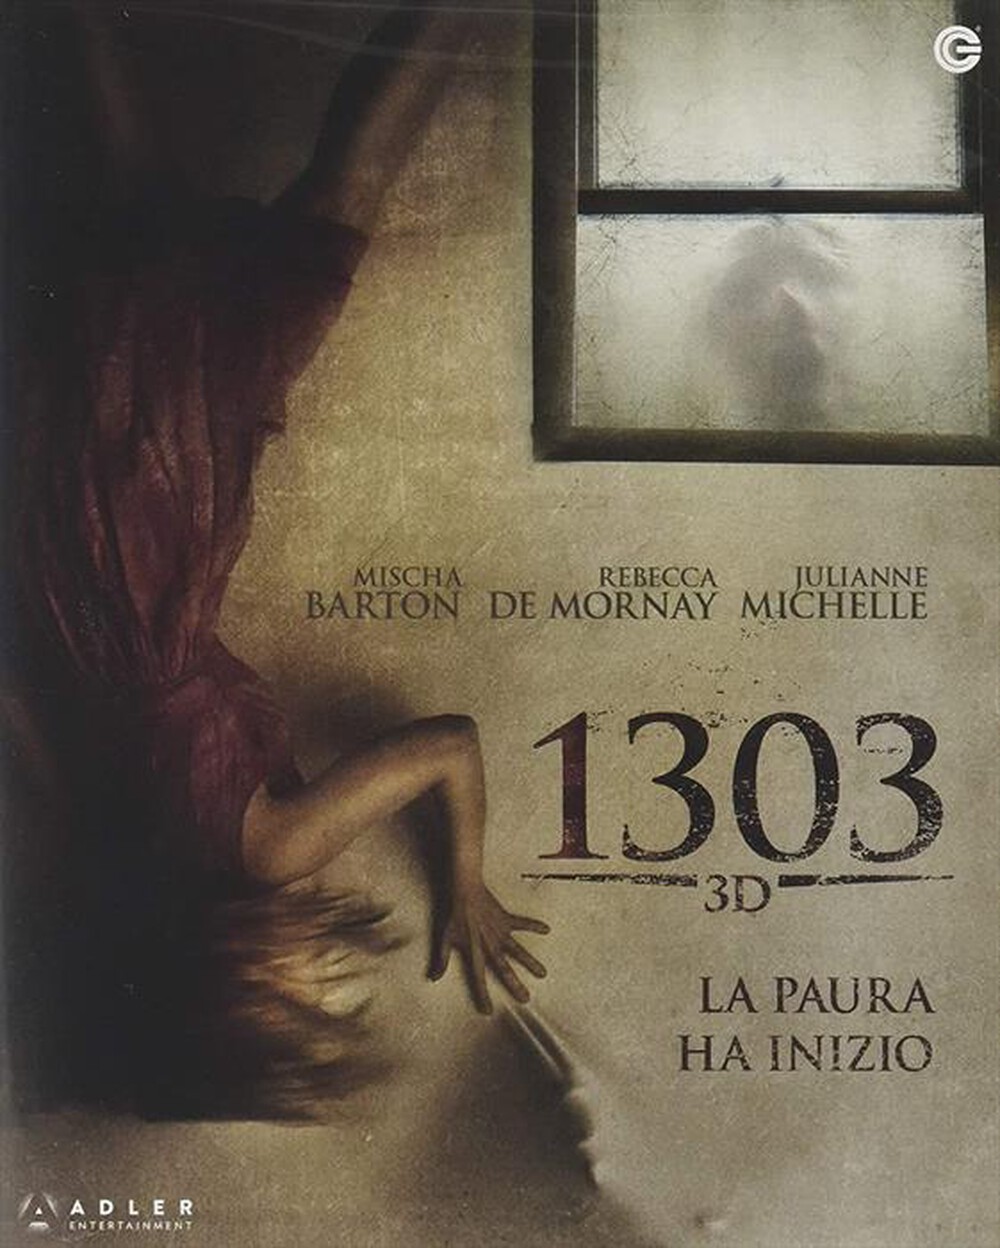 "CECCHI GORI - 1303: La Paura Ha Inizio (Blu-Ray 3D+Blu-Ray)"